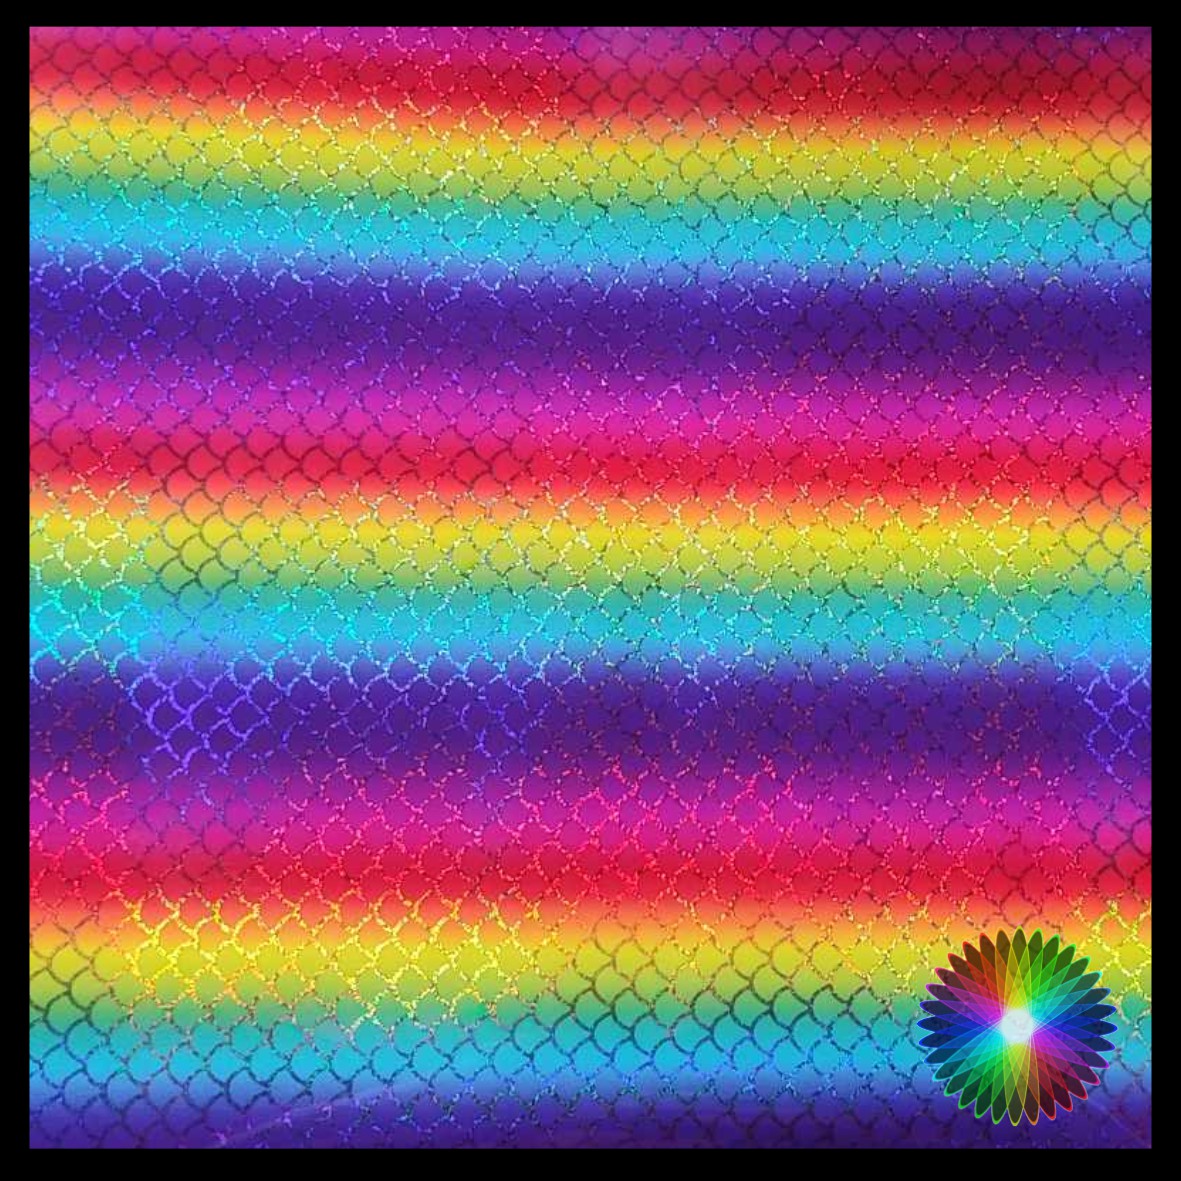 Holographic Rainbow Mermaid Self-Adhesive Vinyl